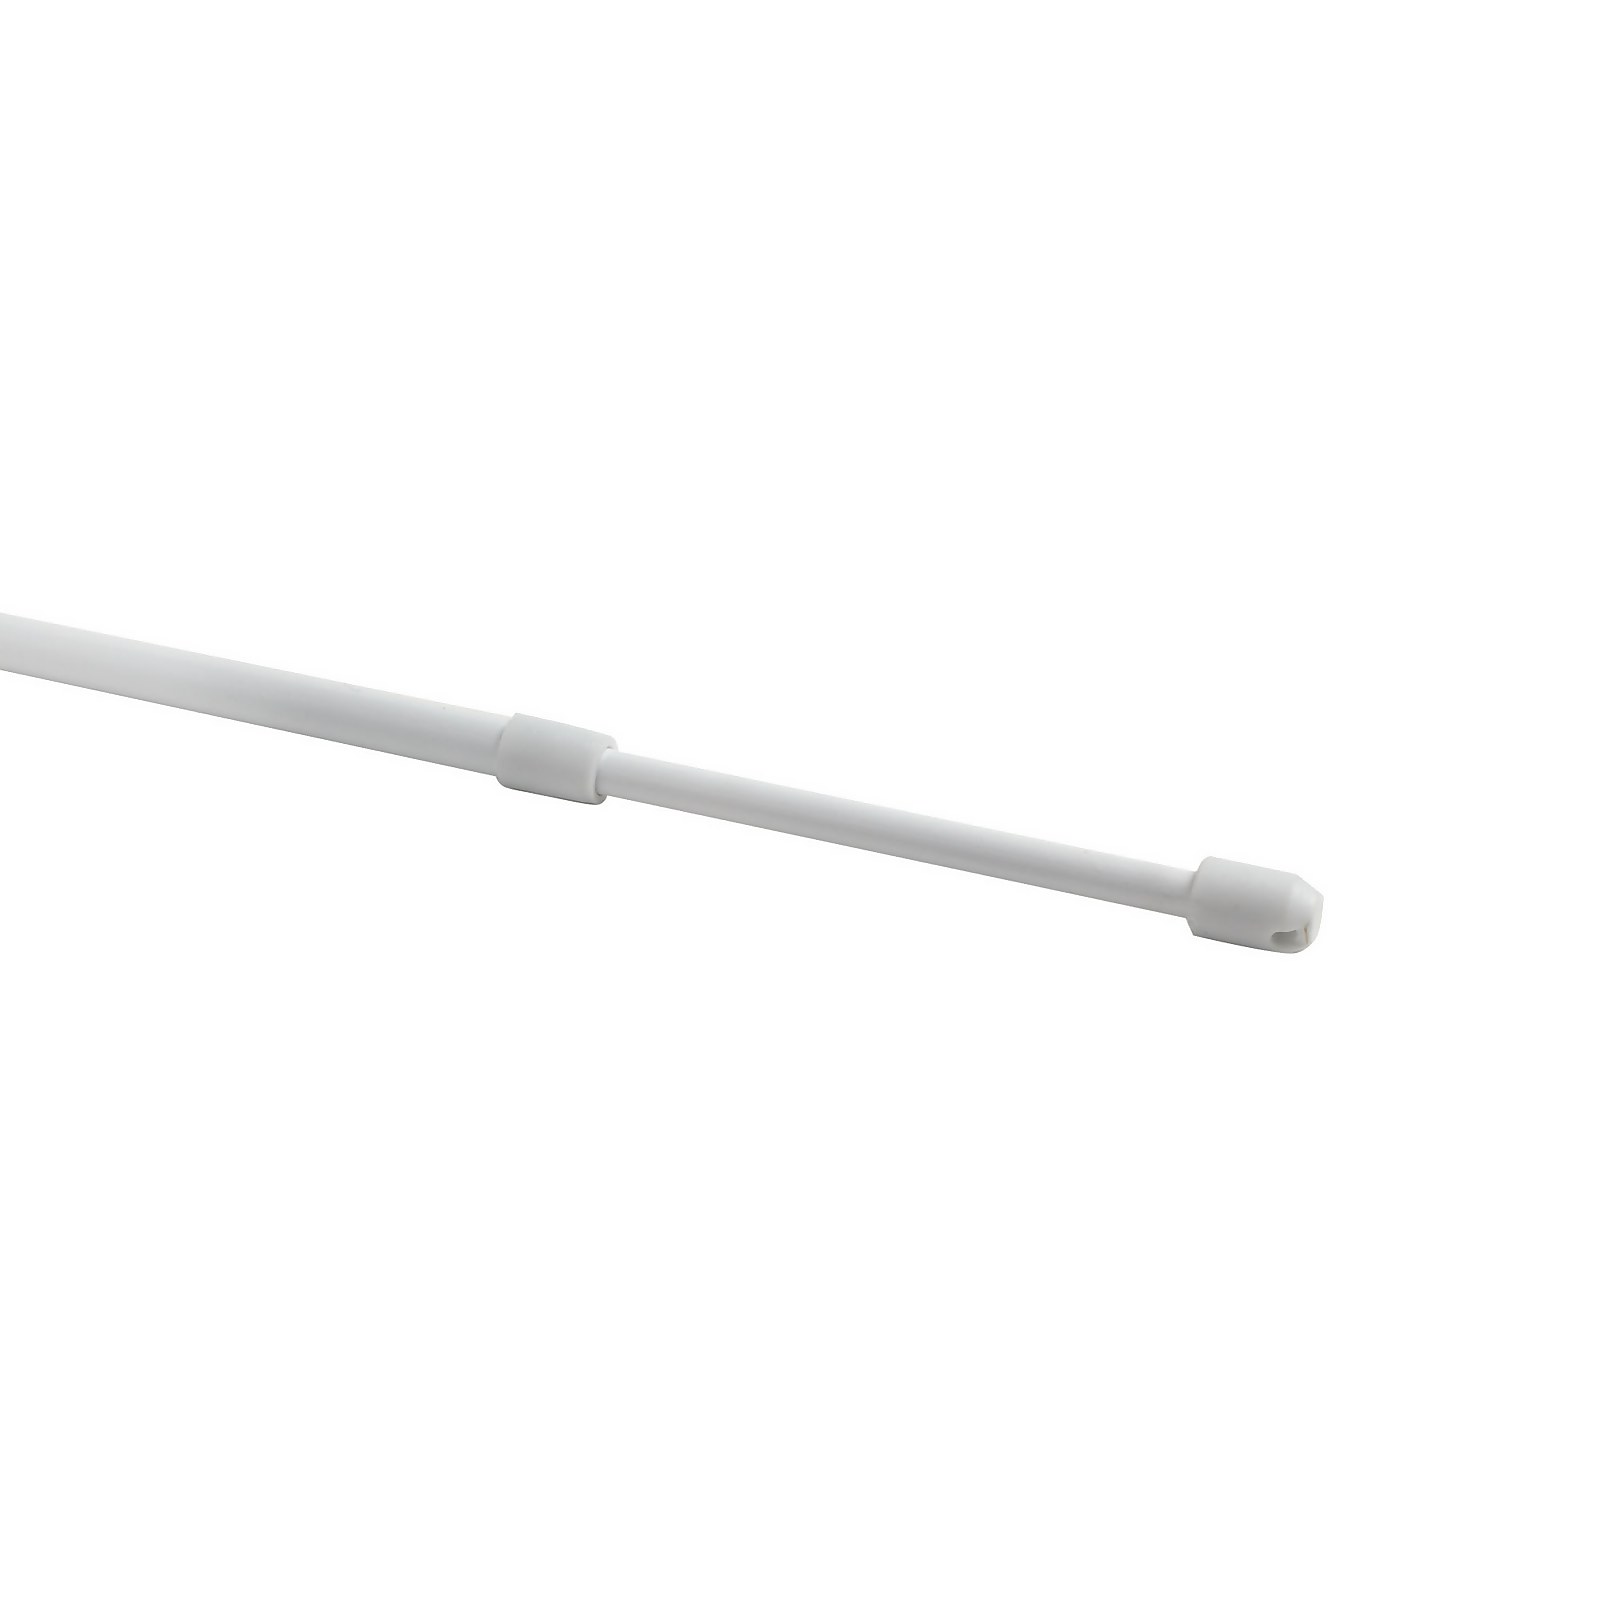 Lightweight Metal Extendable Net Curtain Rod - 150-200cm - White